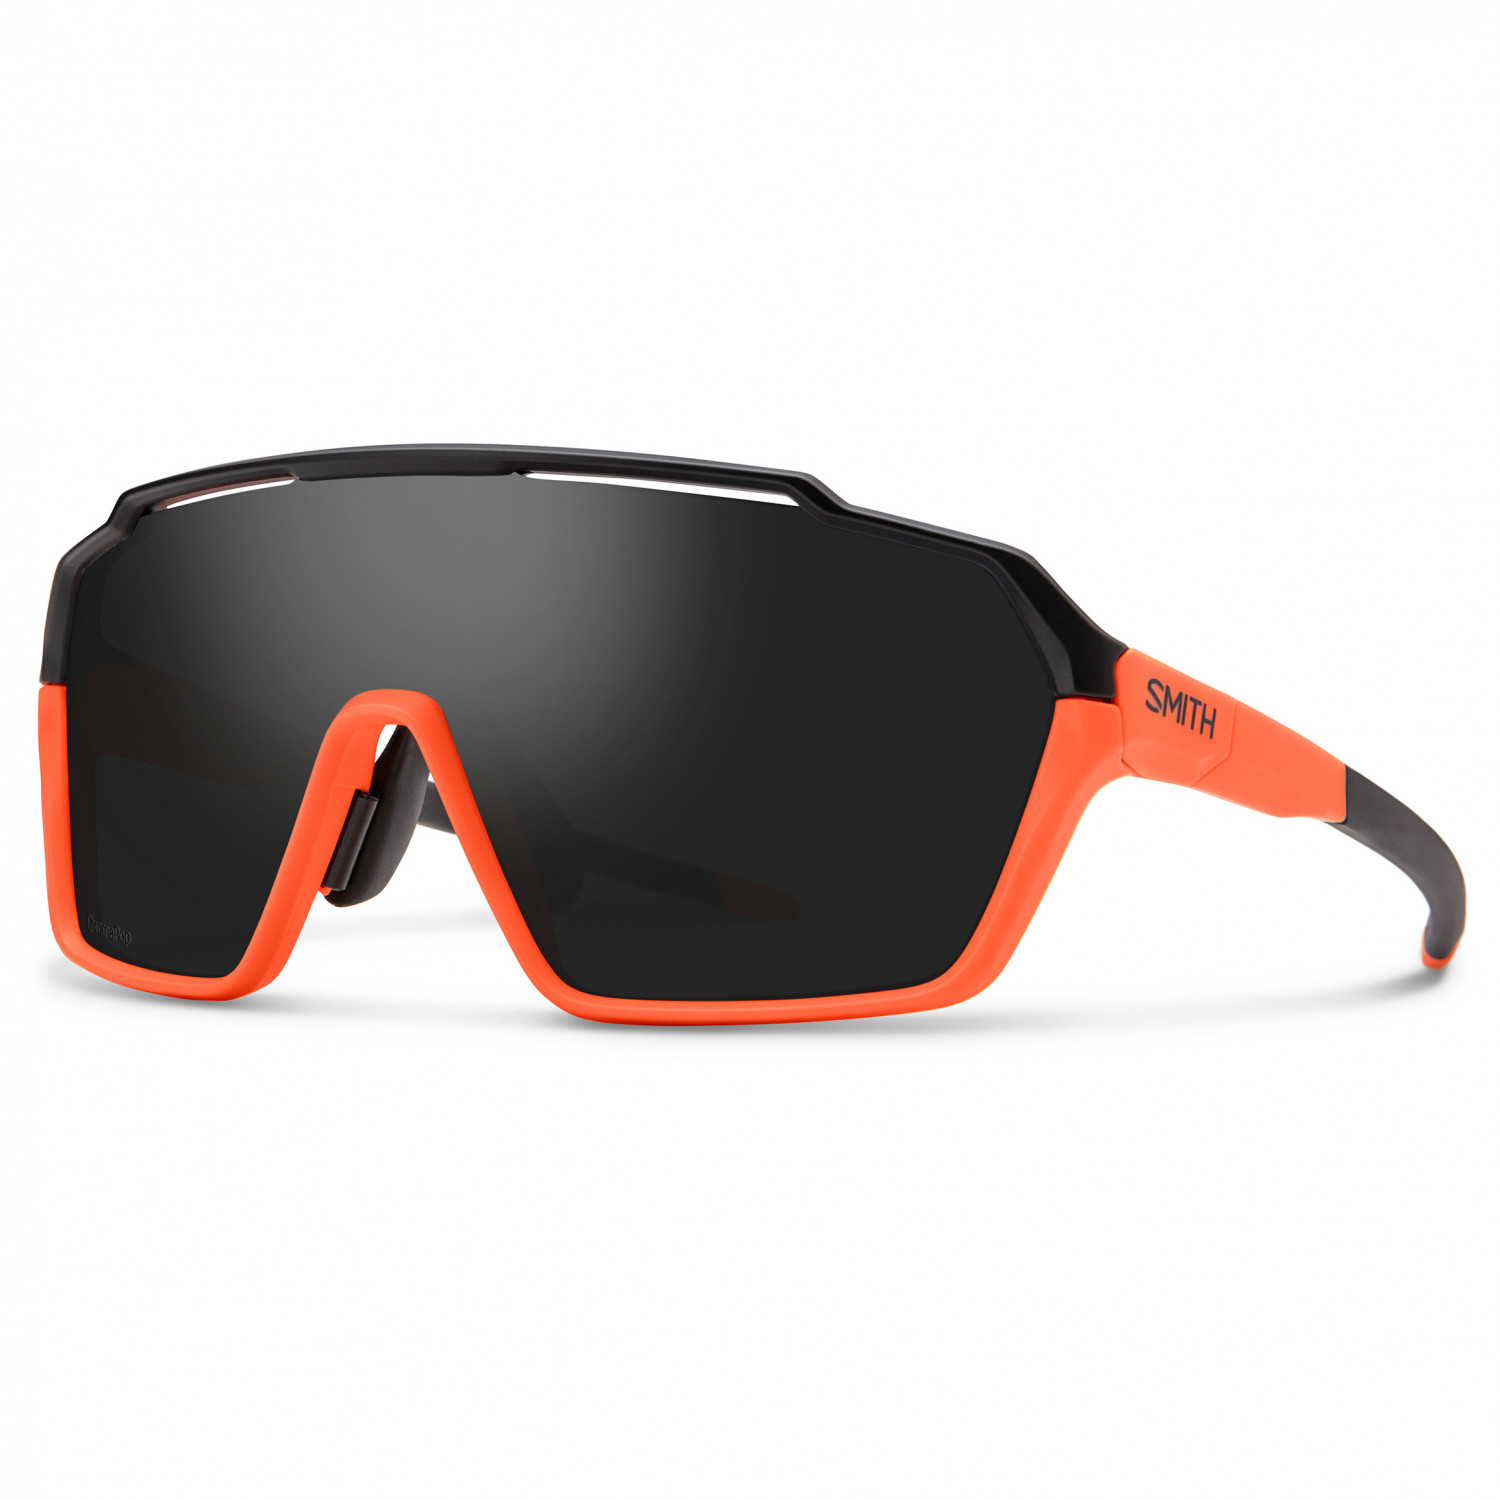 Велосипедные очки Smith Shift MAG S3 (VLT 10%) + S0 (VLT 90%), цвет Black Matte Cinder